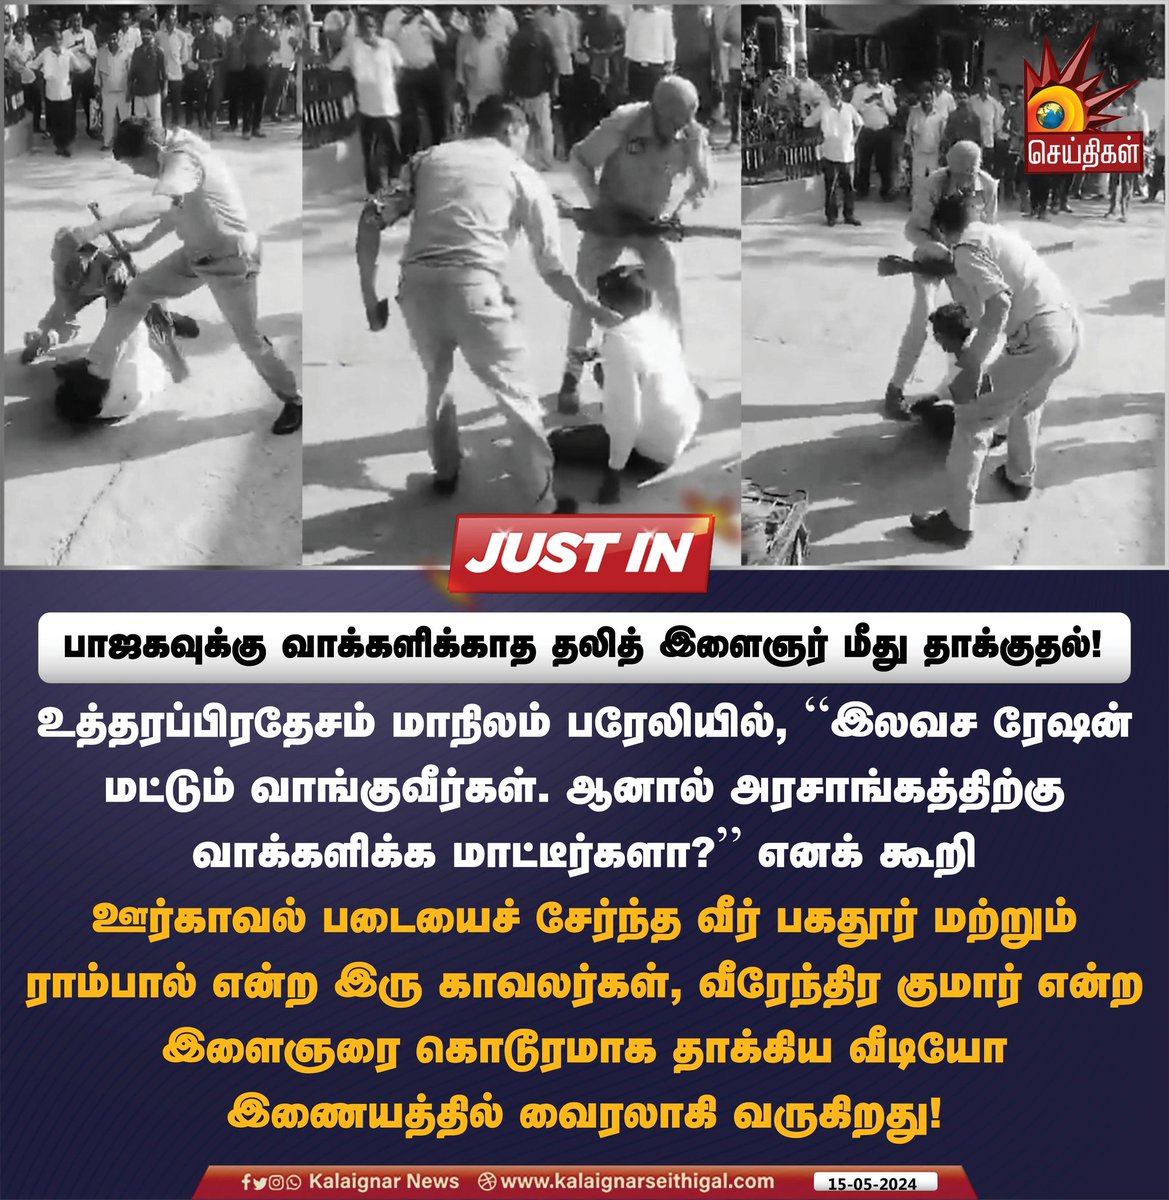 பாஜகவுக்கு வாக்களிக்காத தலித் இளைஞர் மீது தாக்குதல்!

#UttarPradesh #bjpfailedindia #DalitLivesMatter #KalaignarSeithigal